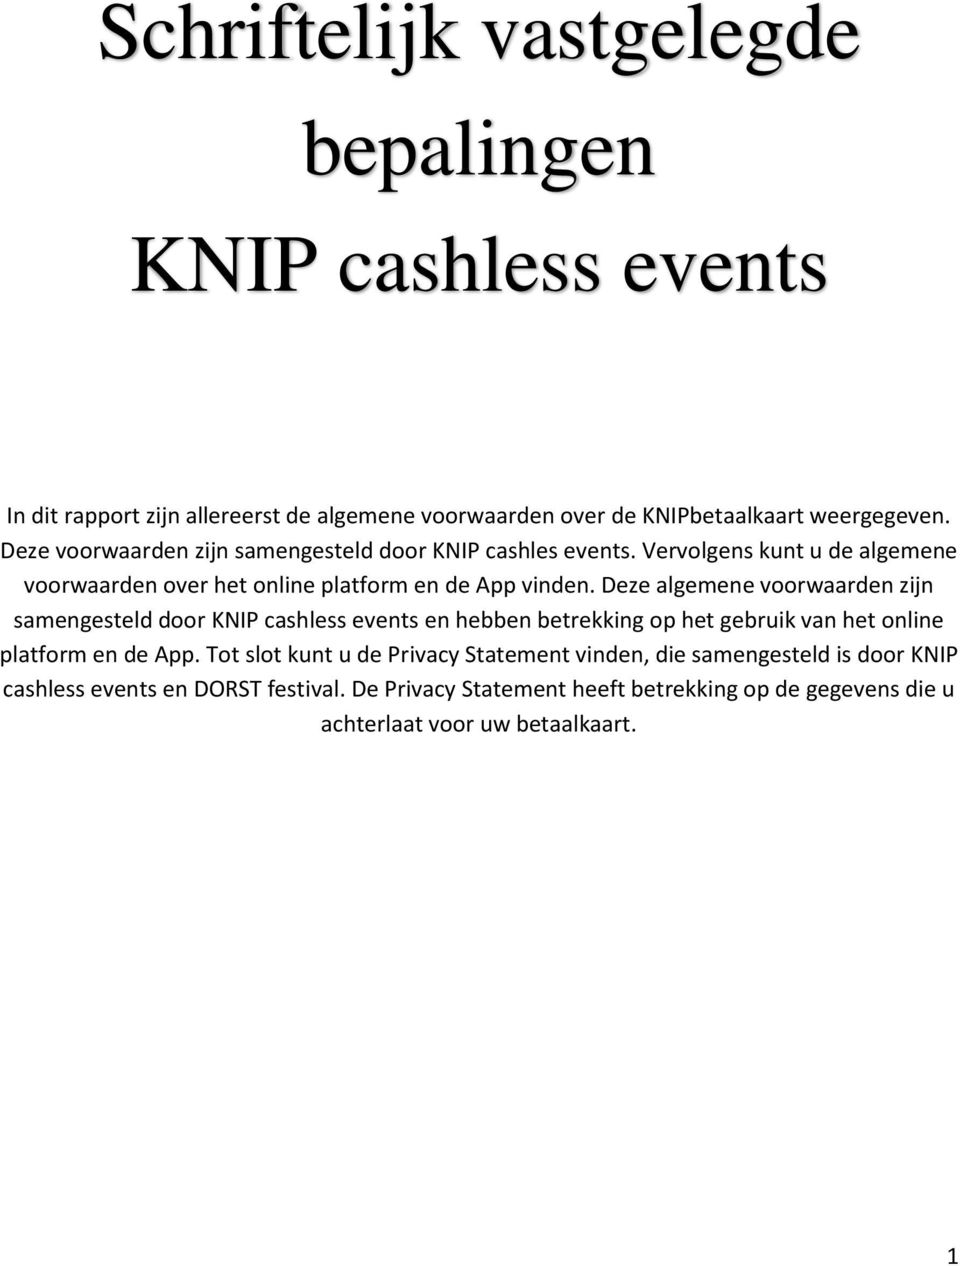 Deze algemene voorwaarden zijn samengesteld door KNIP cashless events en hebben betrekking op het gebruik van het online platform en de App.